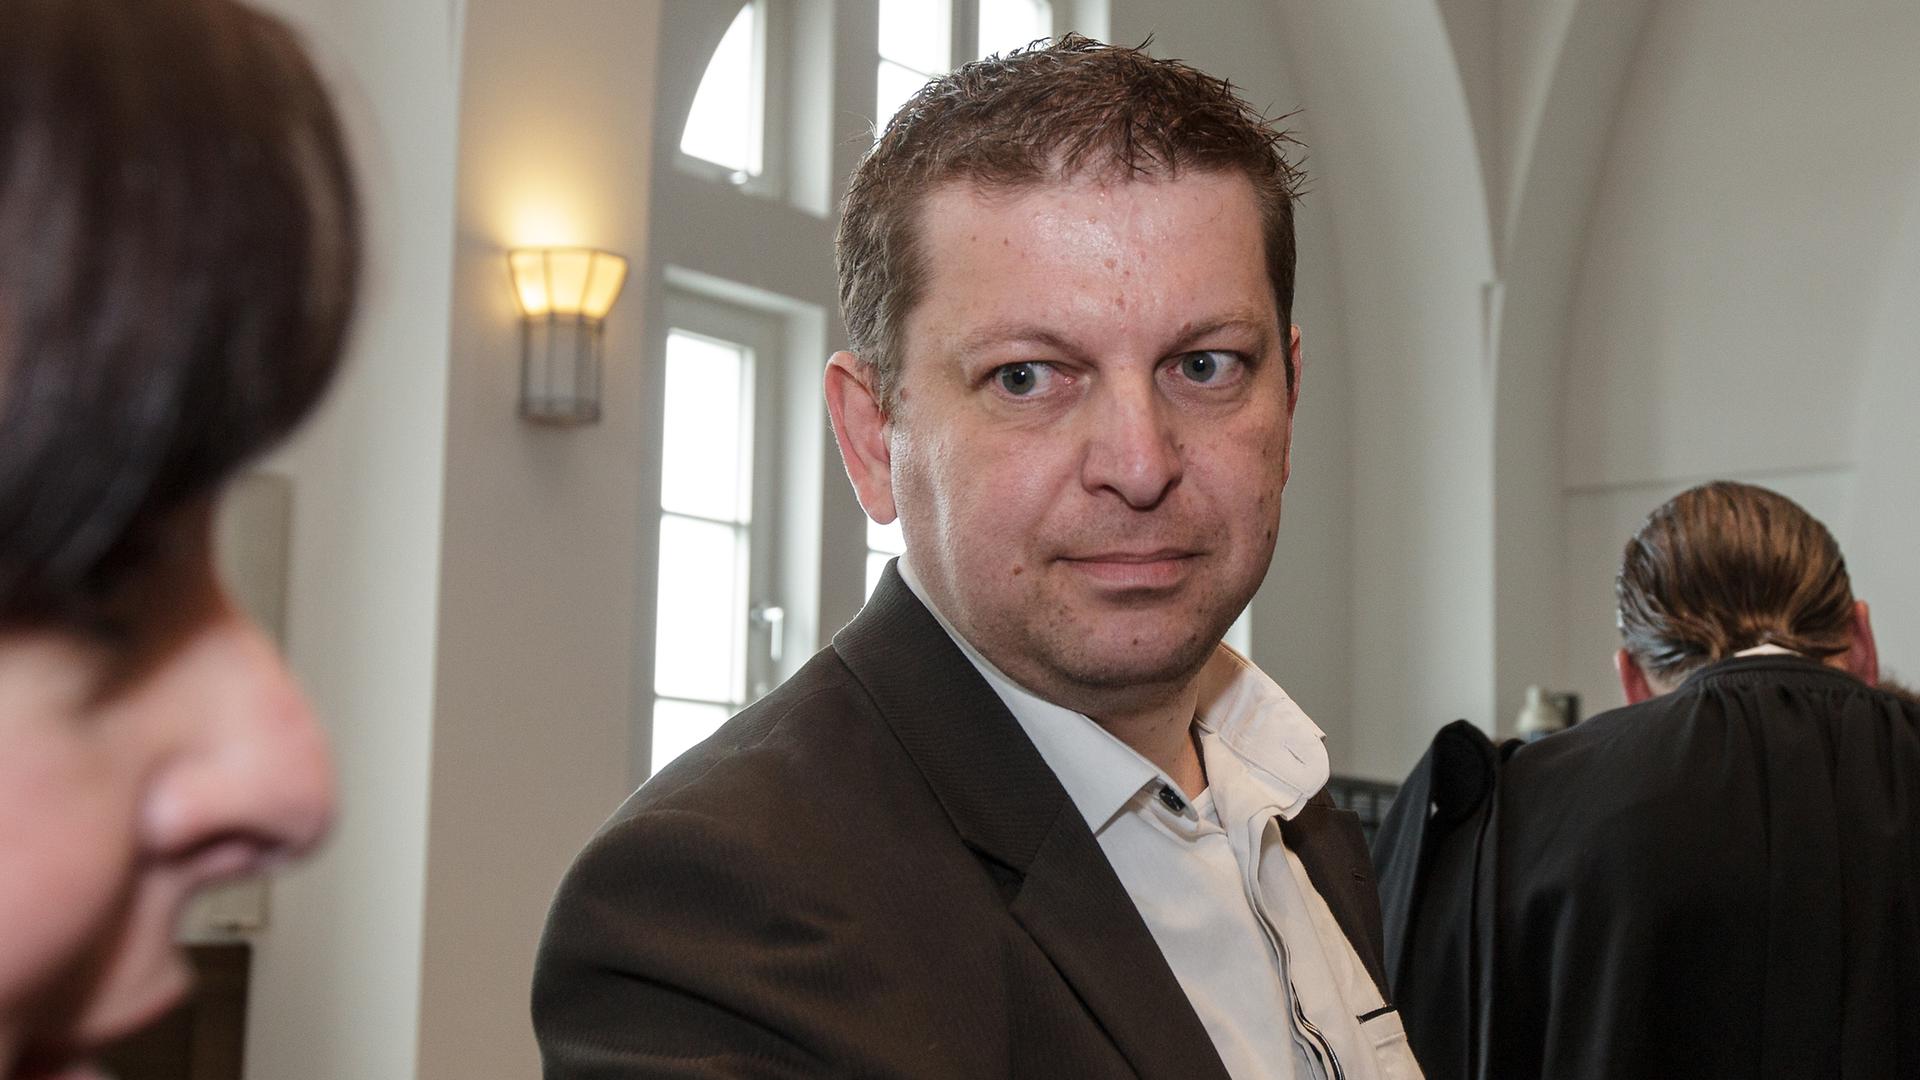 L'ex-employé du cabinet de conseil luxembourgeois PwC a été condamné par la justice luxembourgeoise pour avoir communiqué des documents confidentiels au journaliste Edouard Perrin.